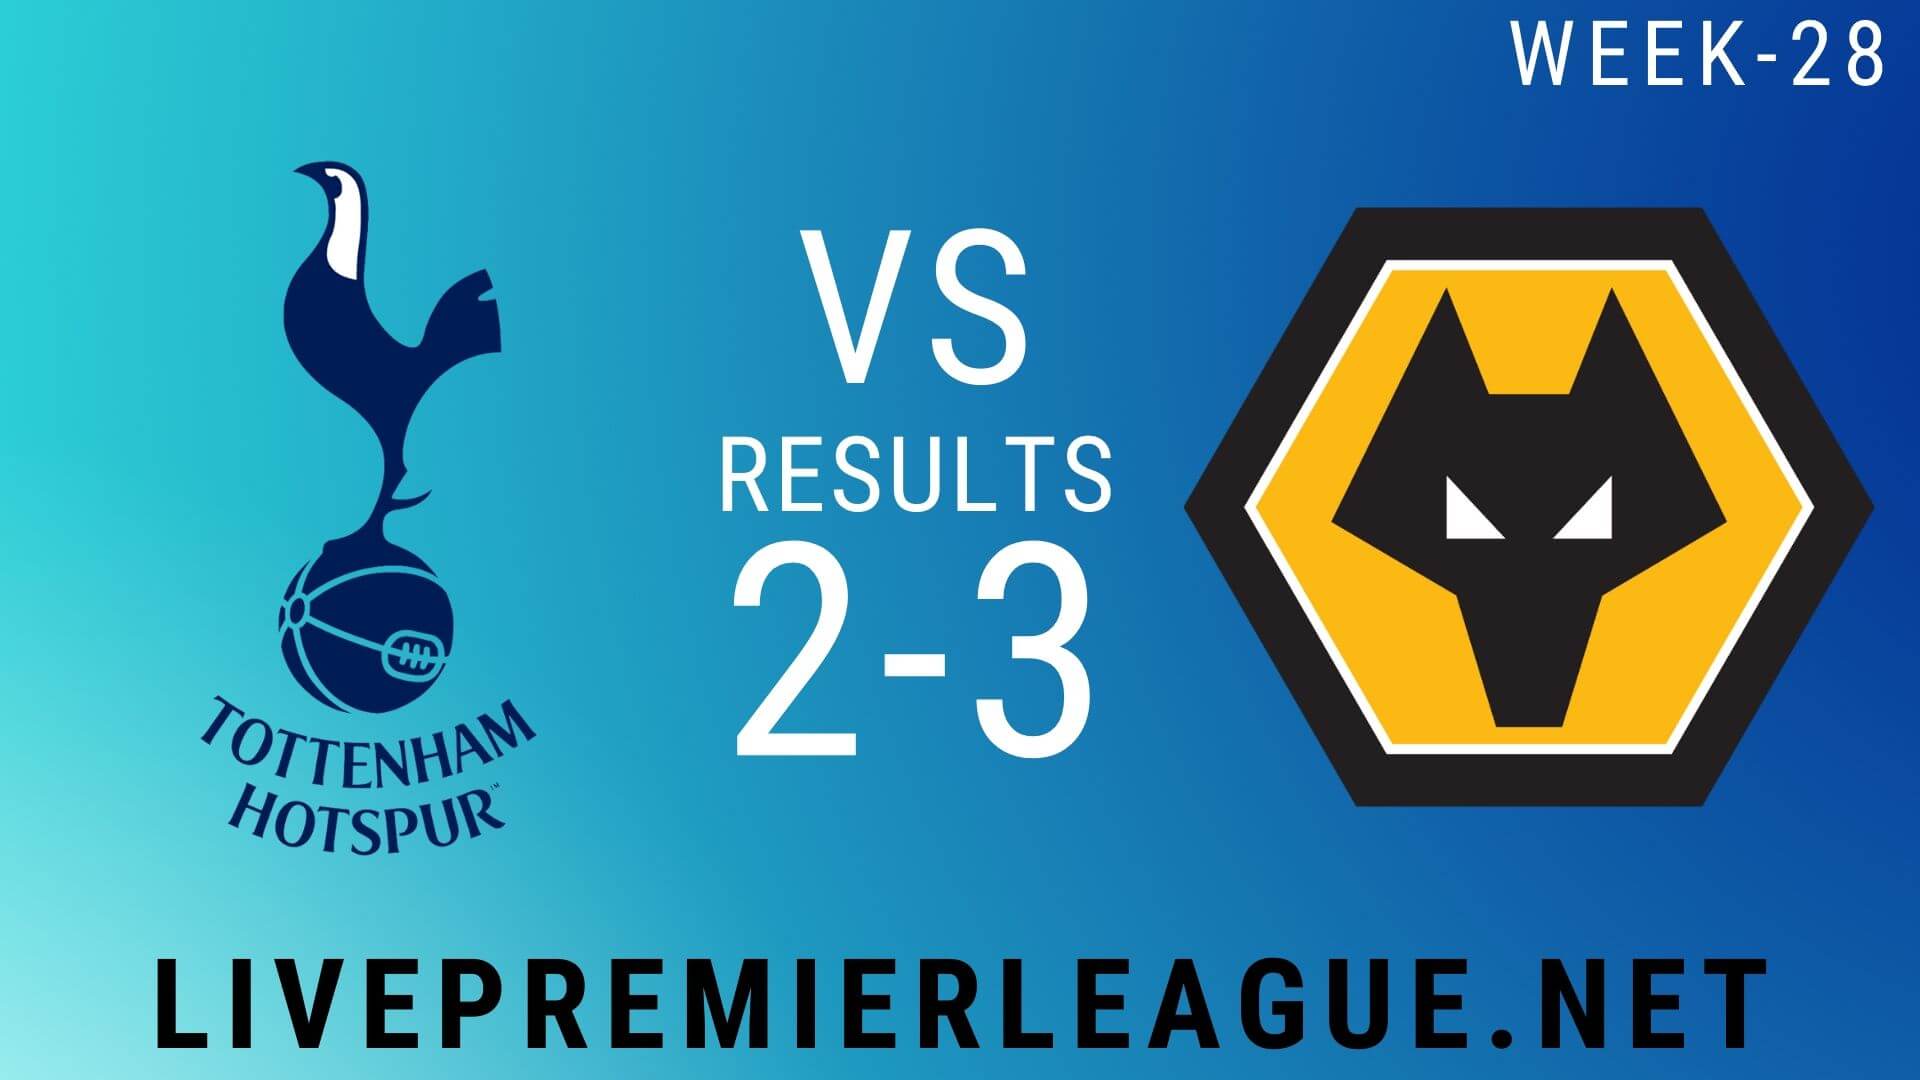 Tottenham Hotspur Vs Wolverhampton Wanderers | Week 28 Result 2020